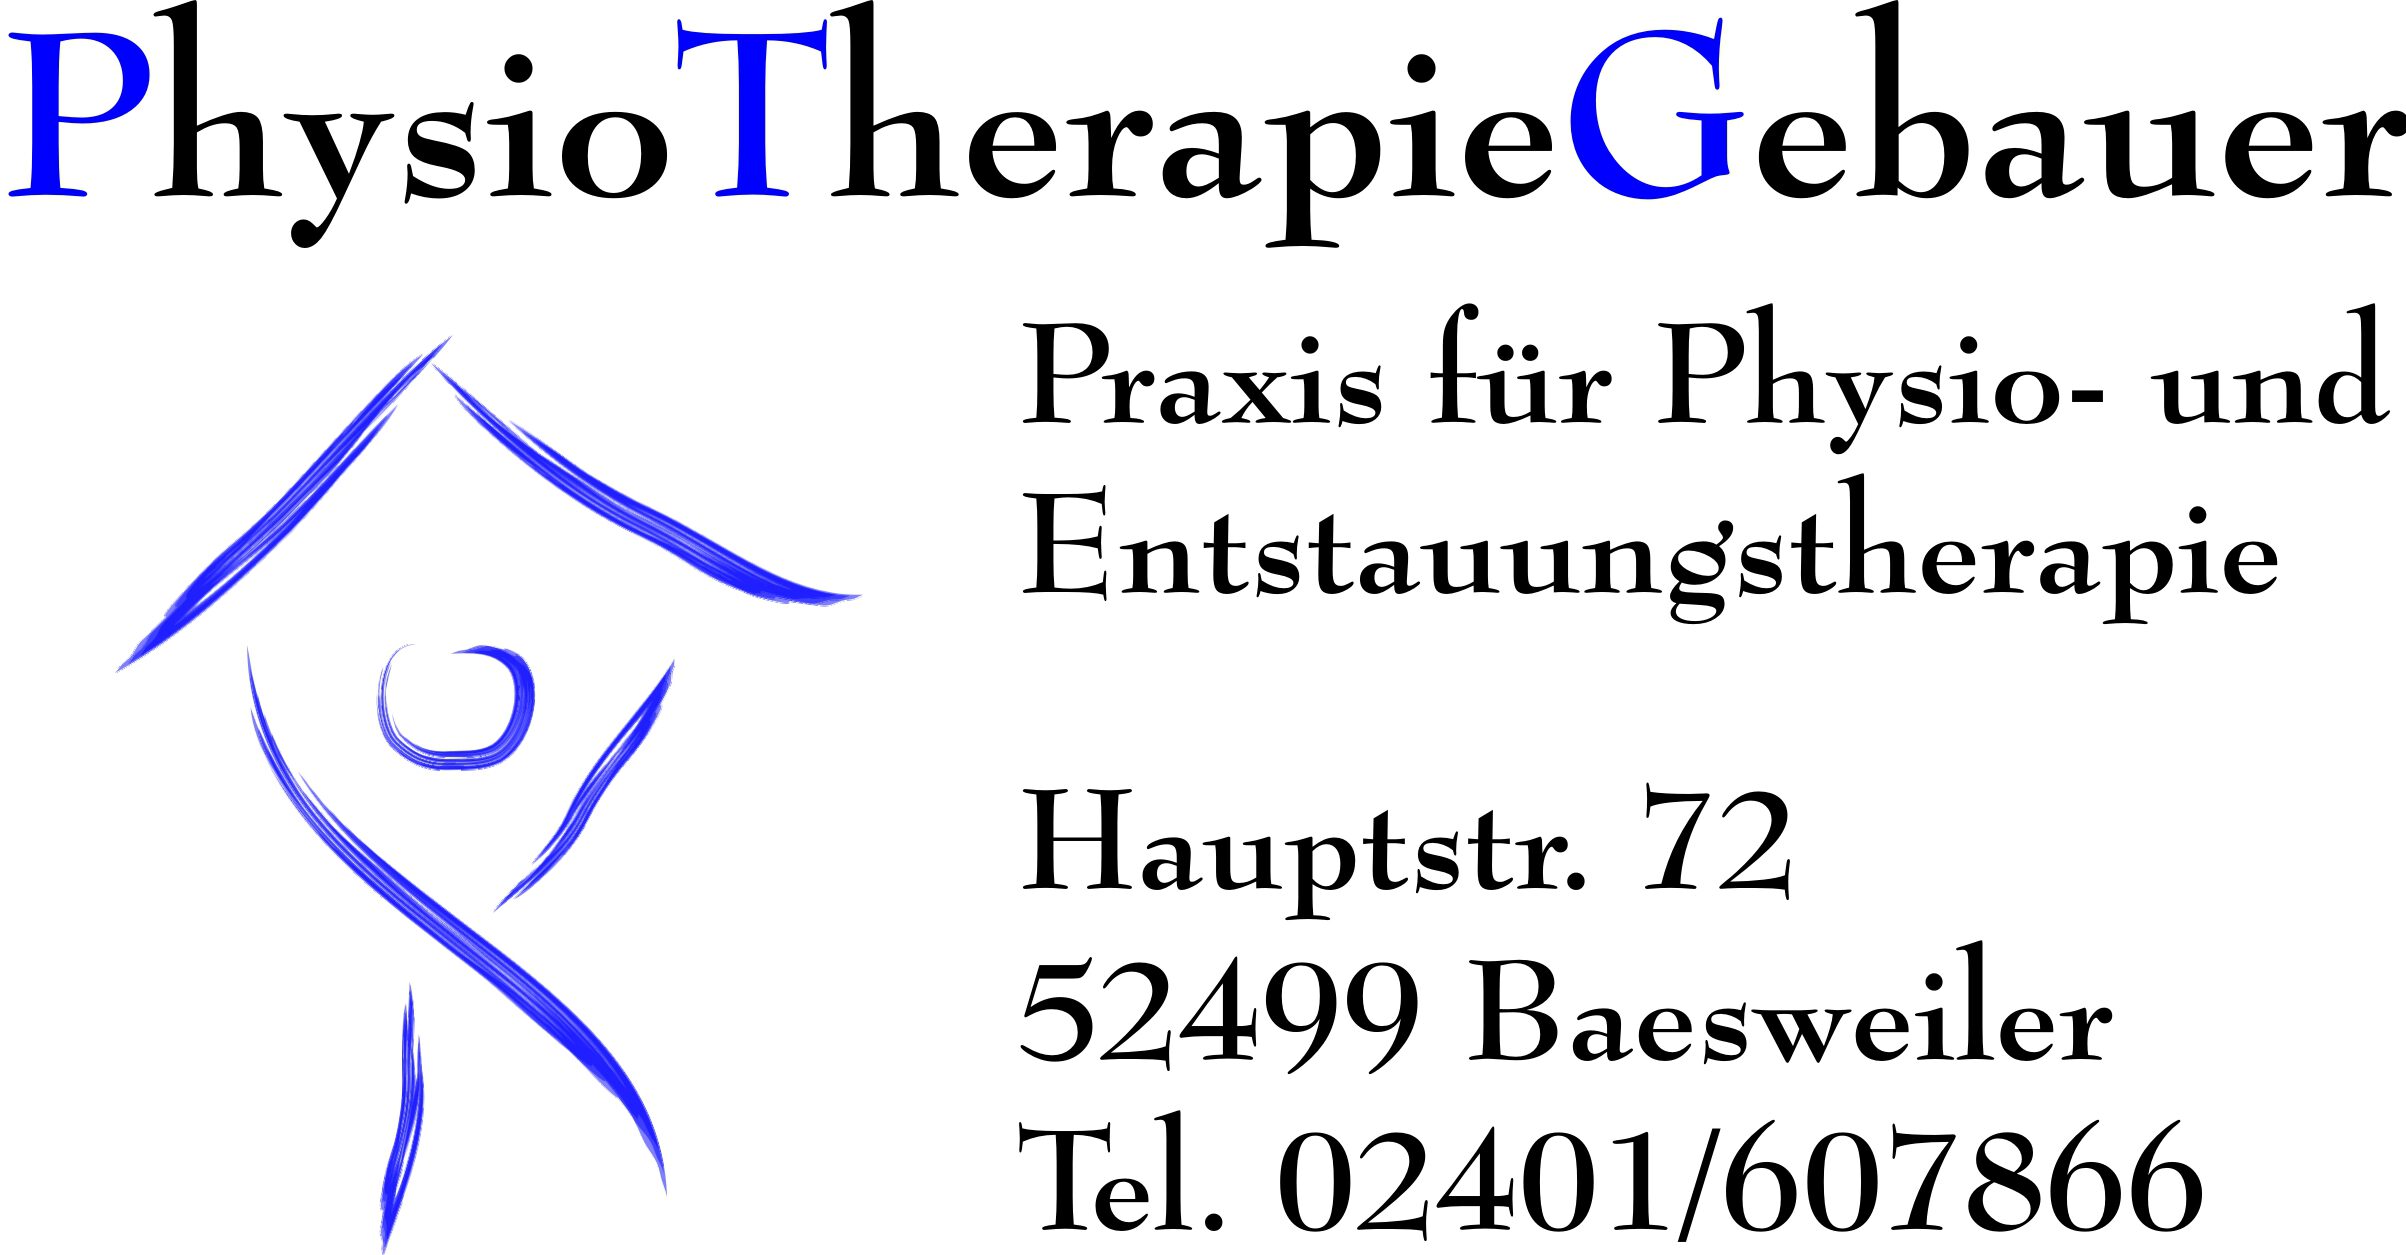 PhysioTherapieGebauer